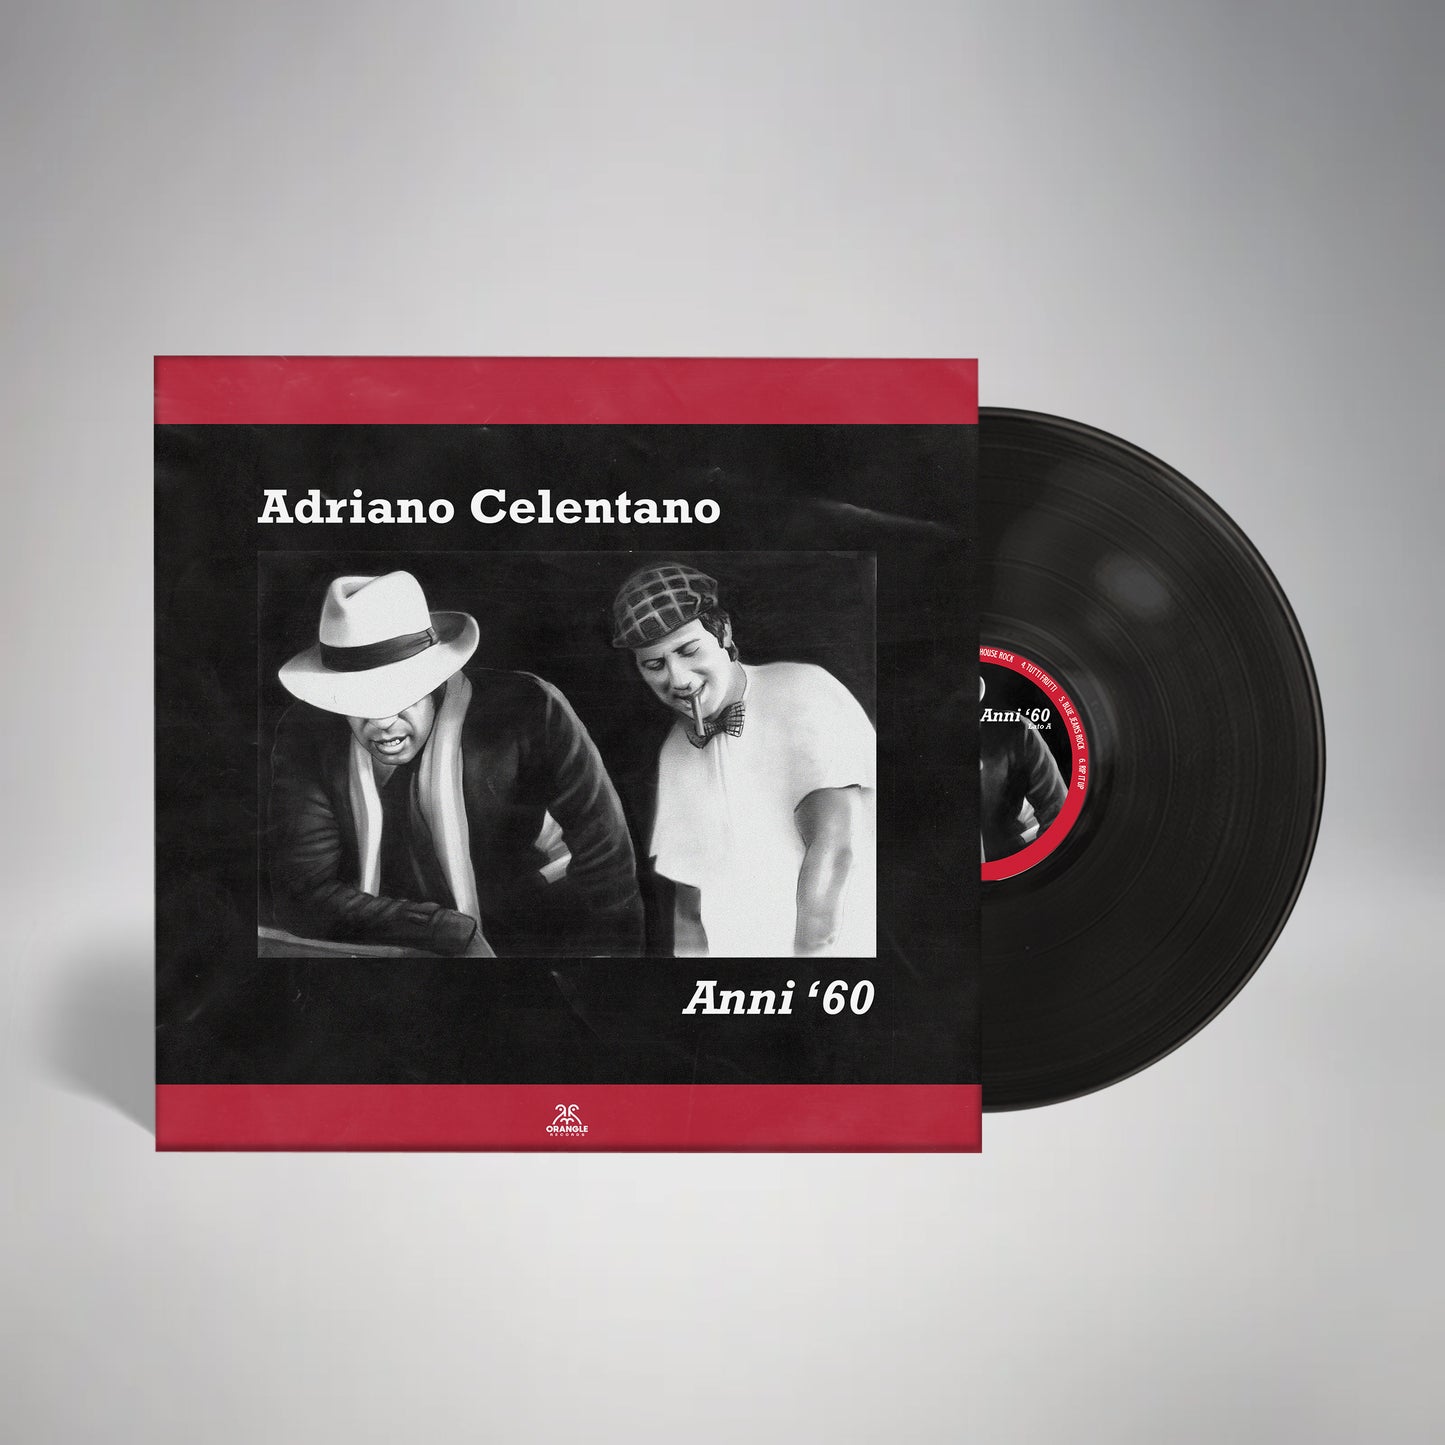 Vinile Adriano Celentano "Anni 60"